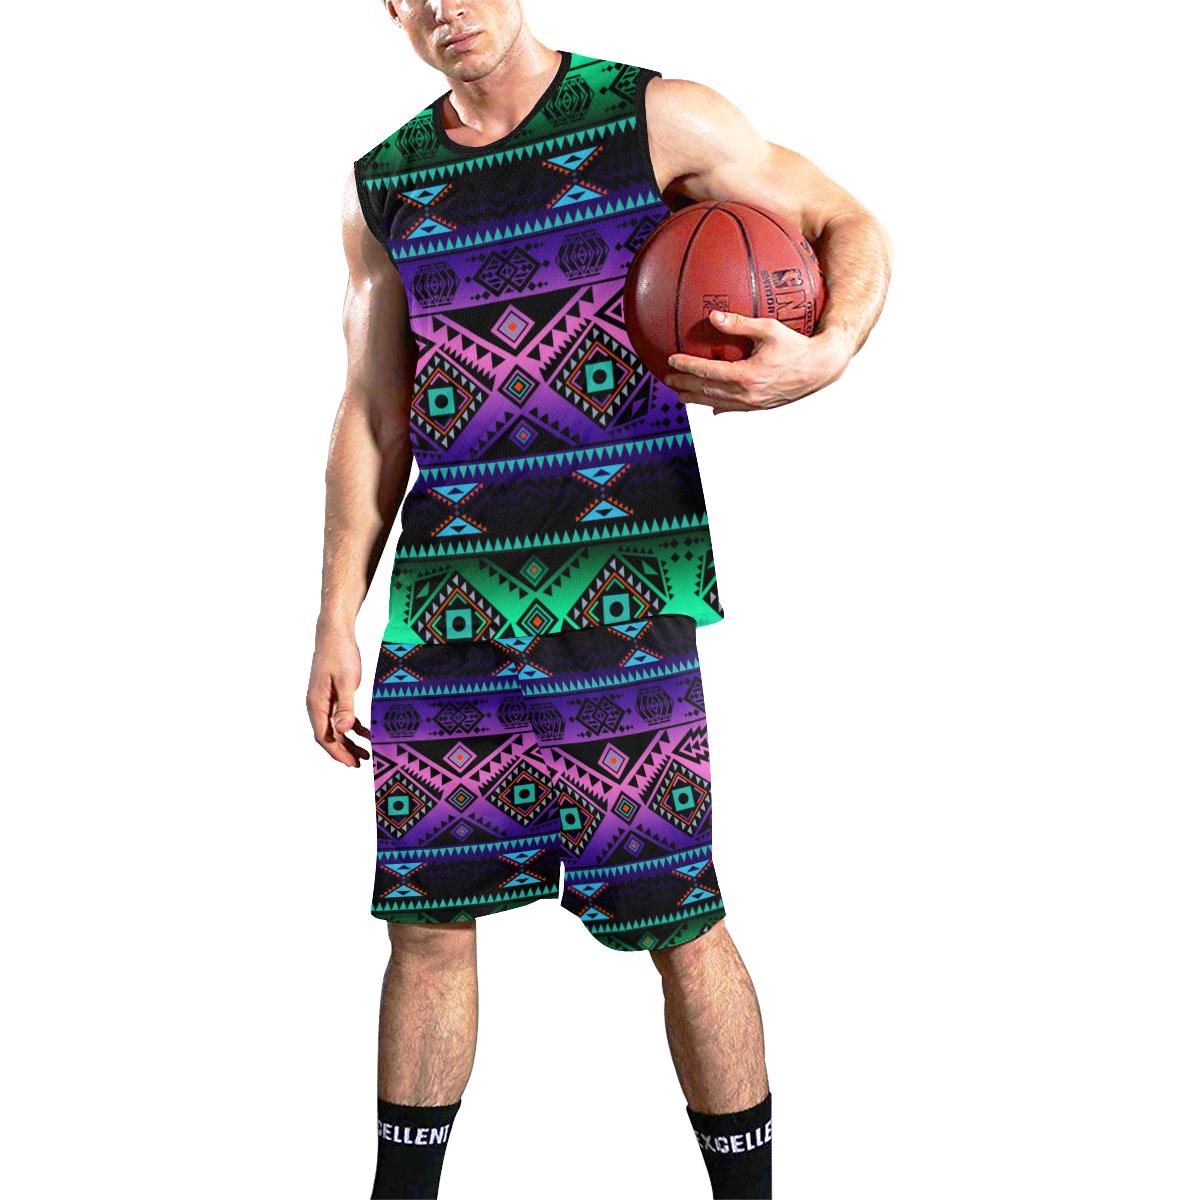 California Coast Sunrise All Over Print Basketball Uniform Basketball Uniform e-joyer 